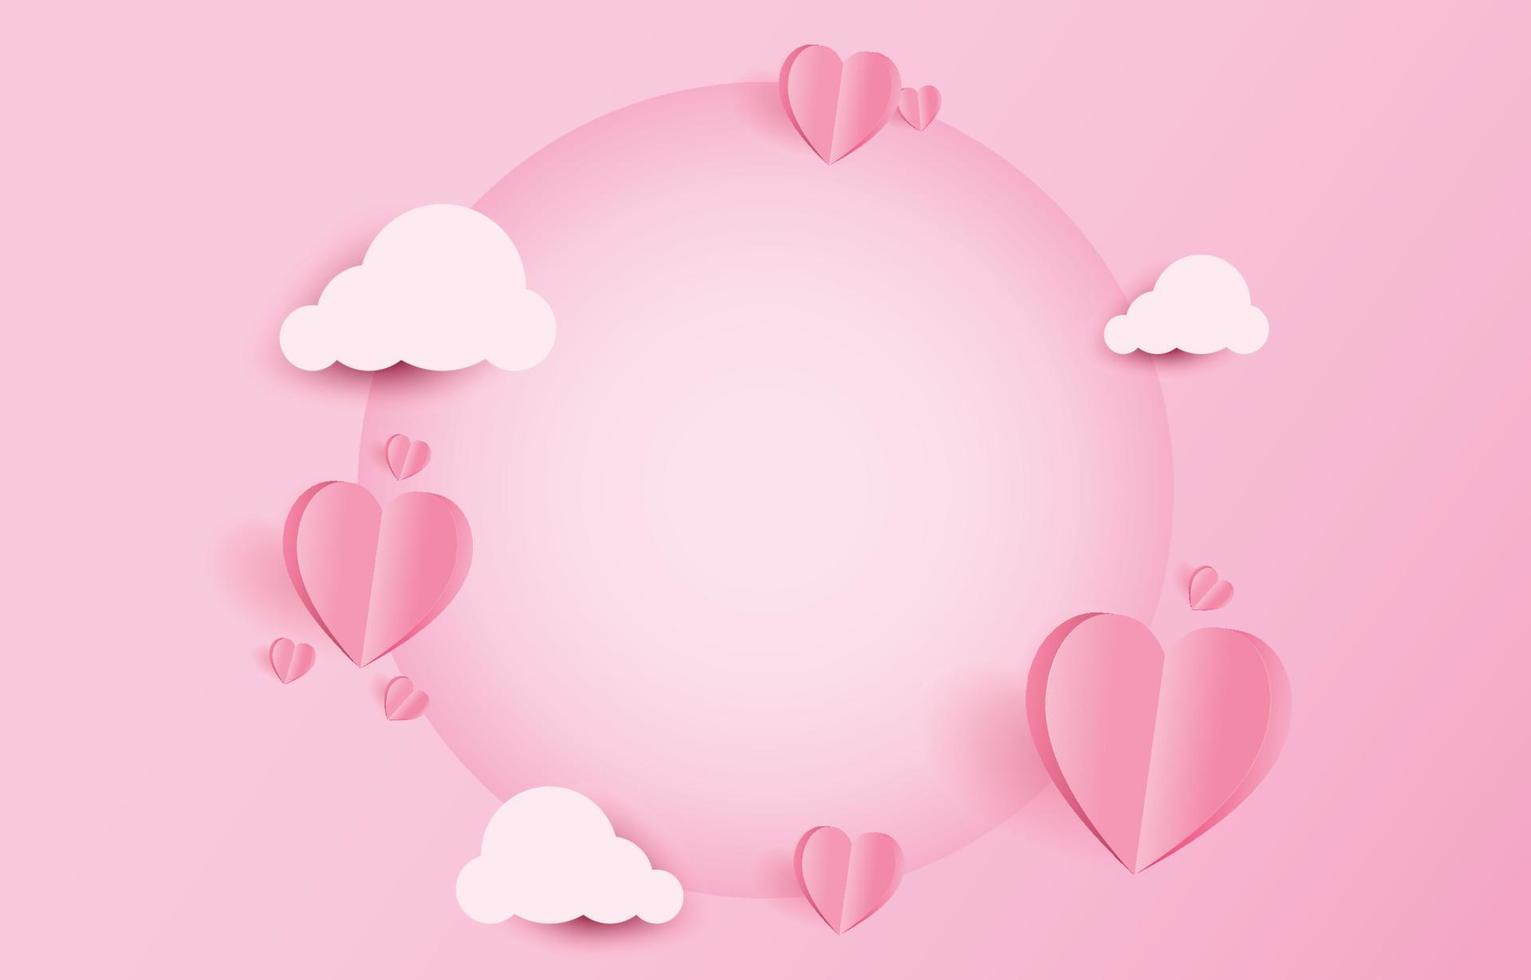 papierschnittelemente in form von herzfliegen und wolken auf rosa und süßem hintergrund mit einem leeren kreisrahmen. vektorsymbole der liebe für den glücklichen valentinstag, geburtstagsgrußkartendesign. vektor